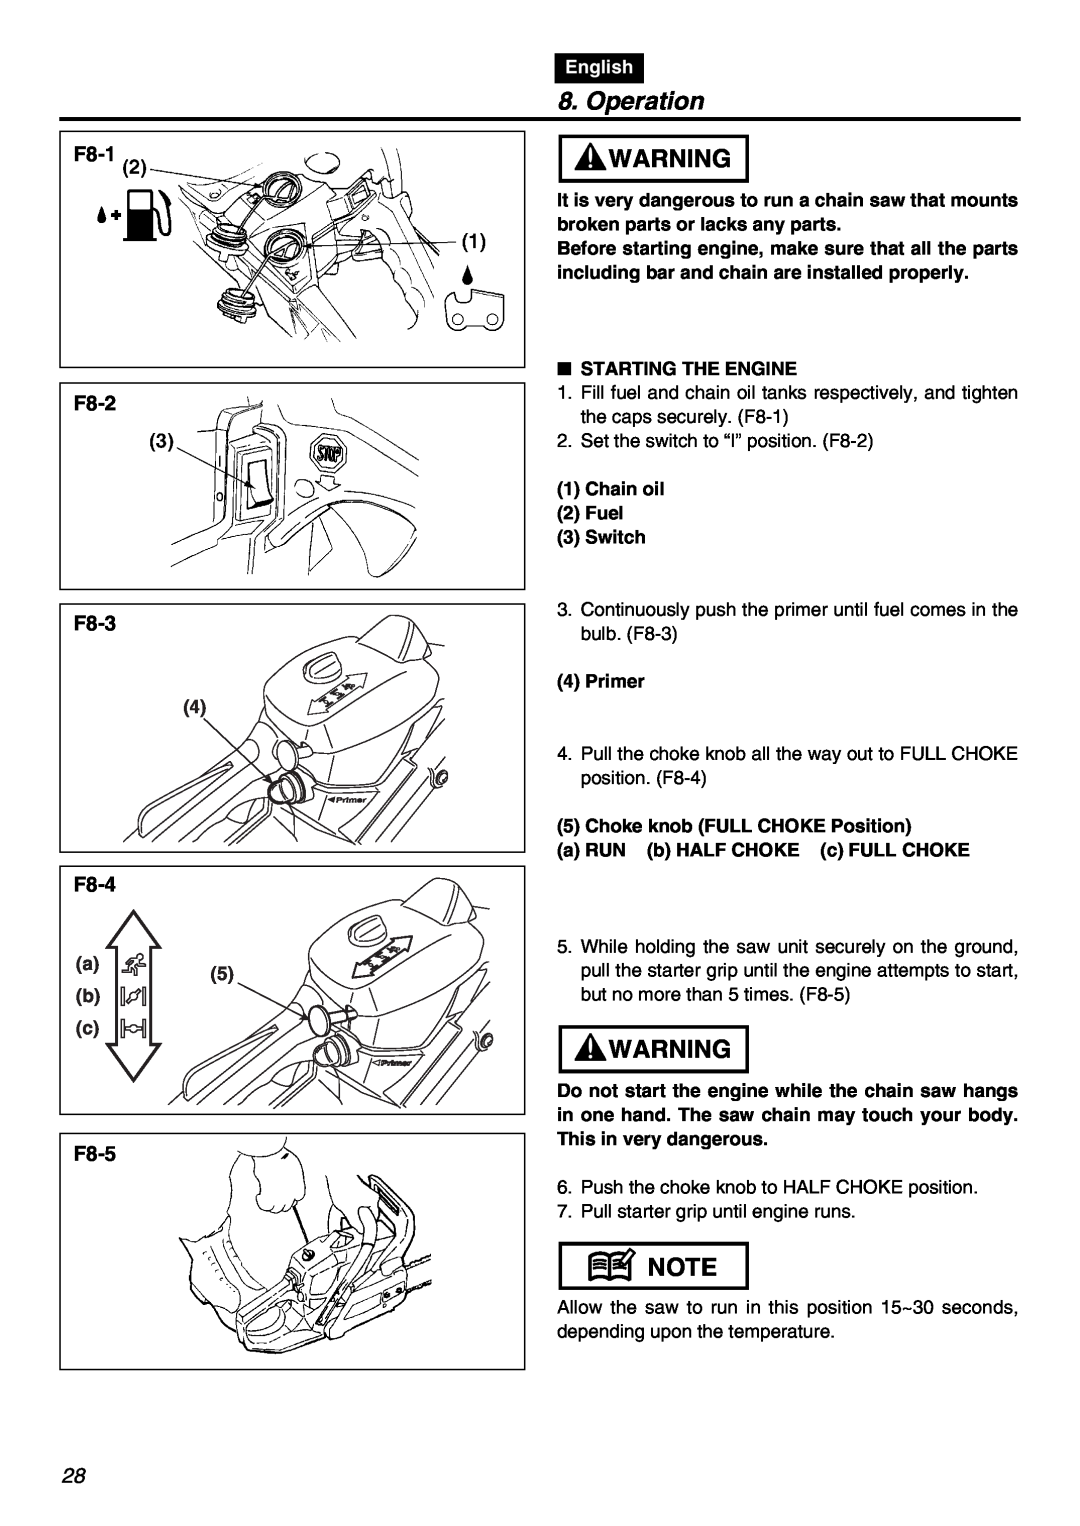 RedMax GZ400 manual Operation, F8-1 F8-2 F8-3, F8-4, F8-5, English 